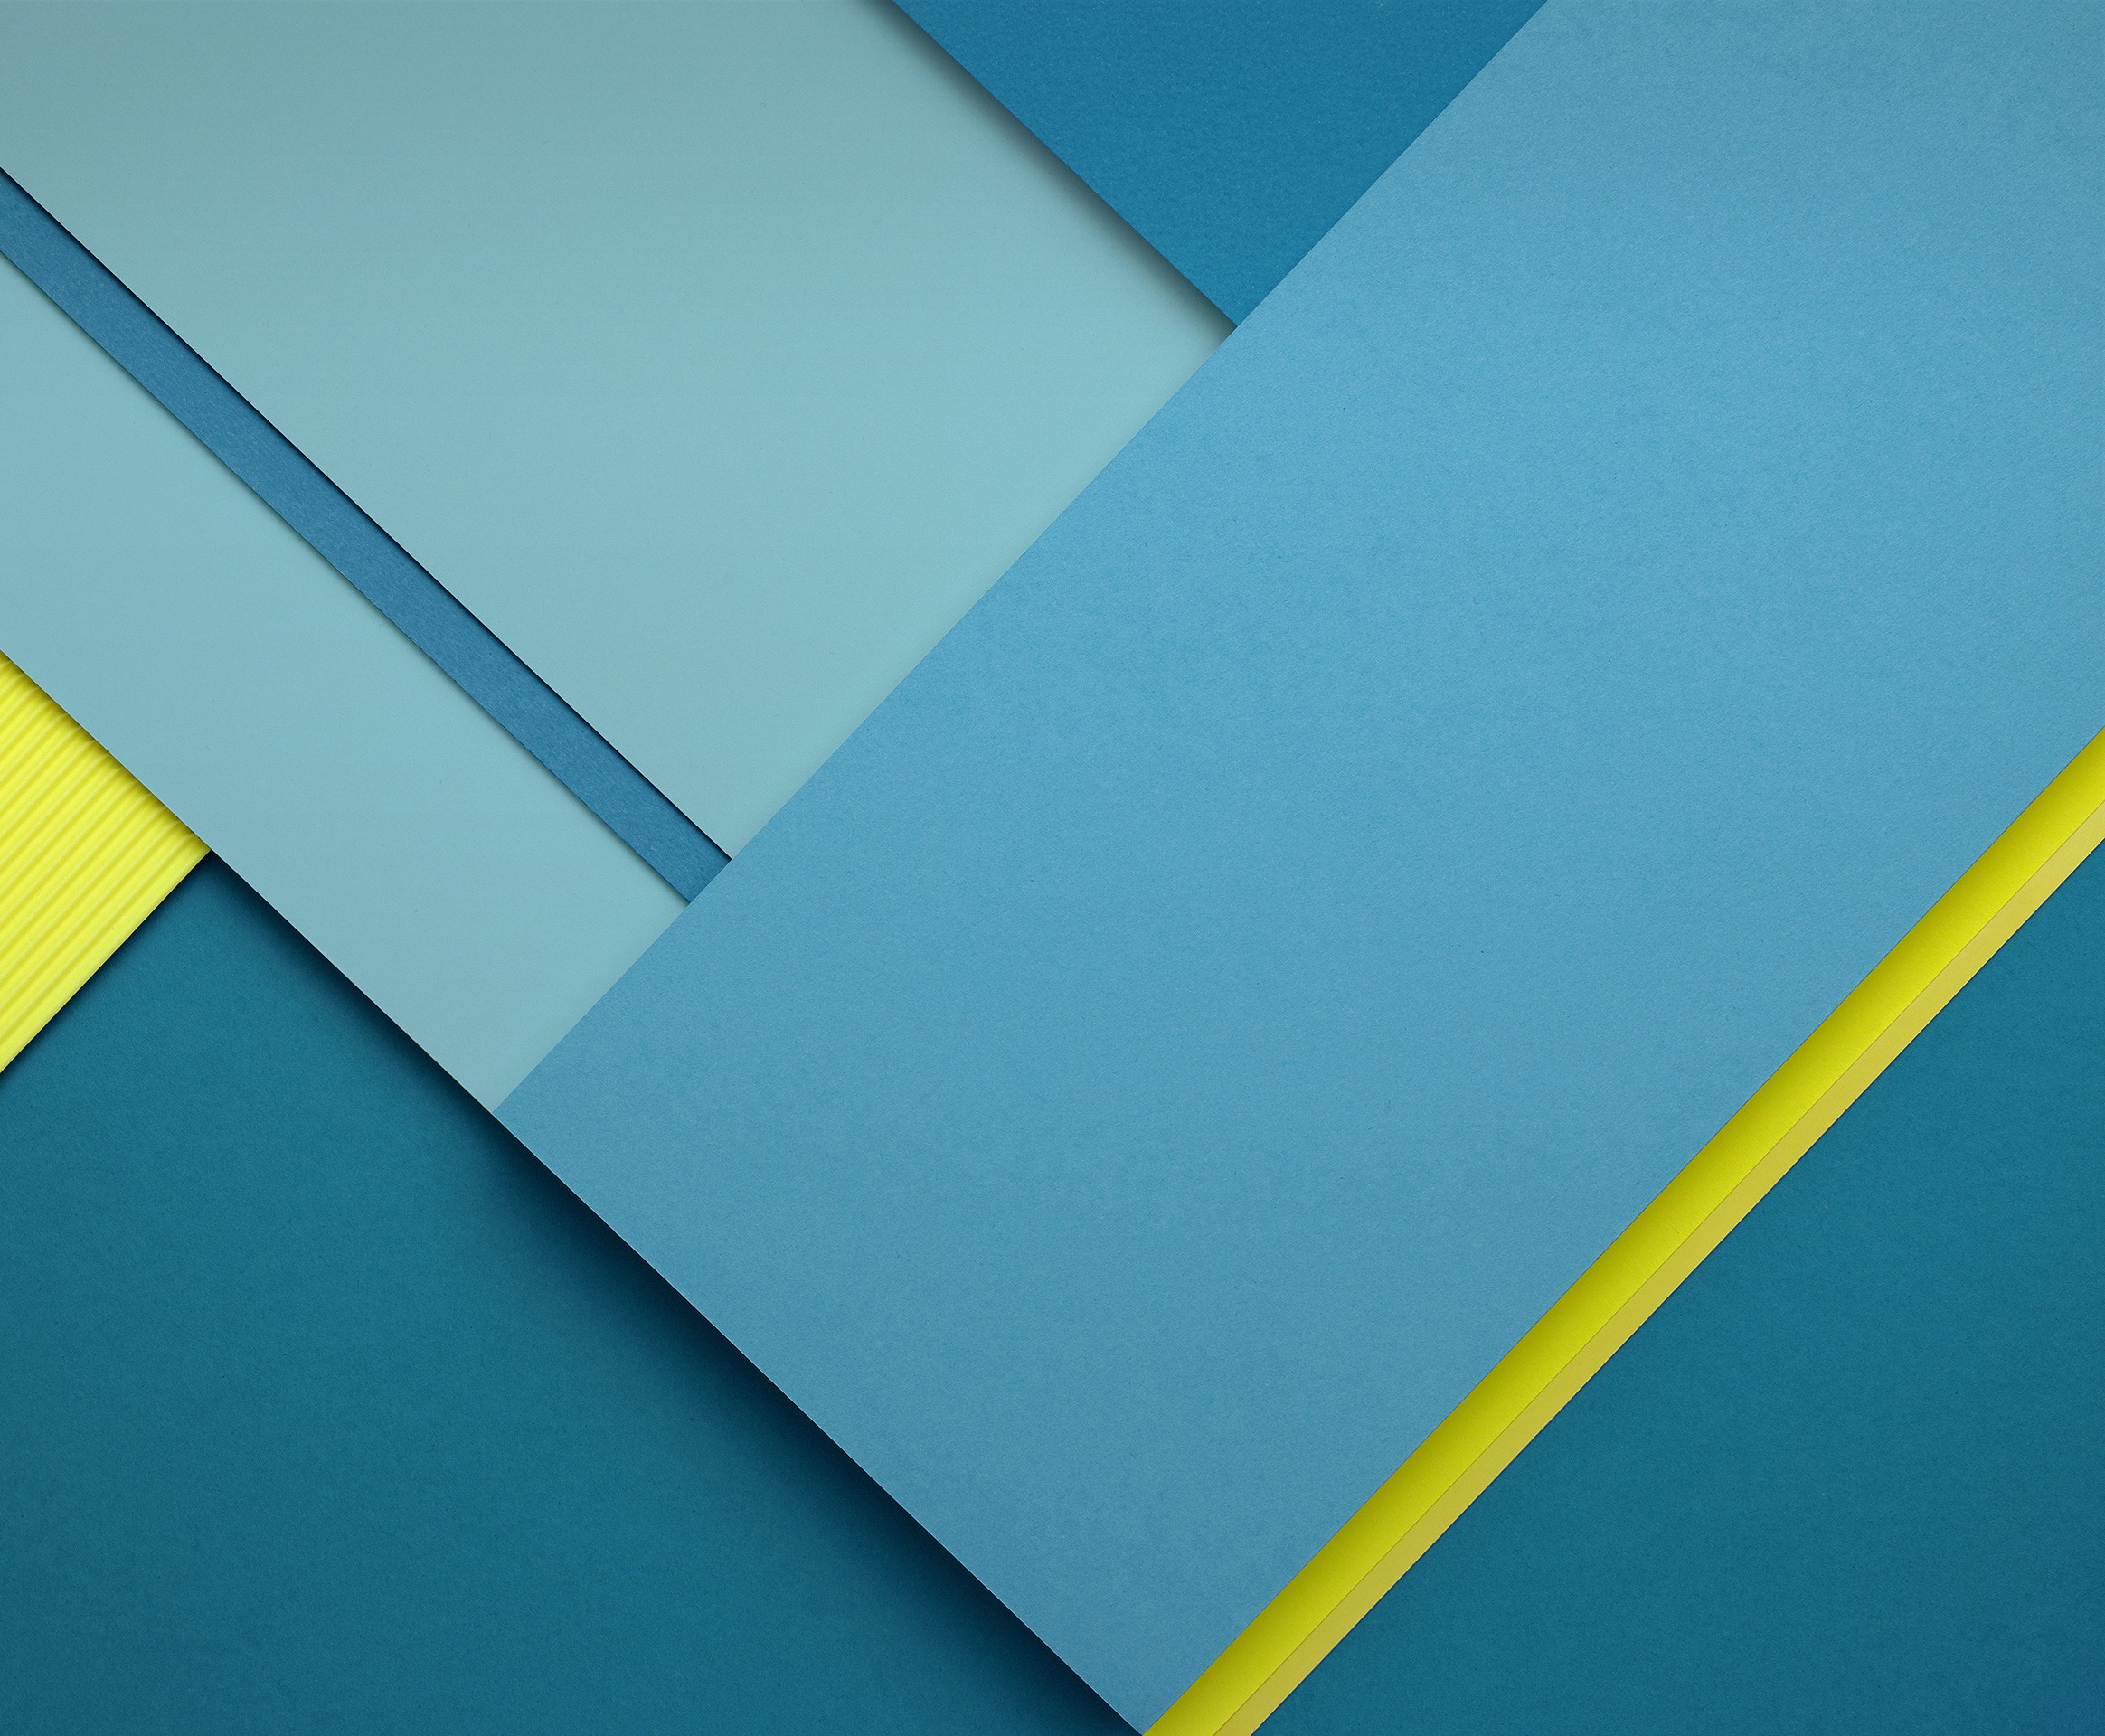 Nexus 7 Android Lollipop wallpapers